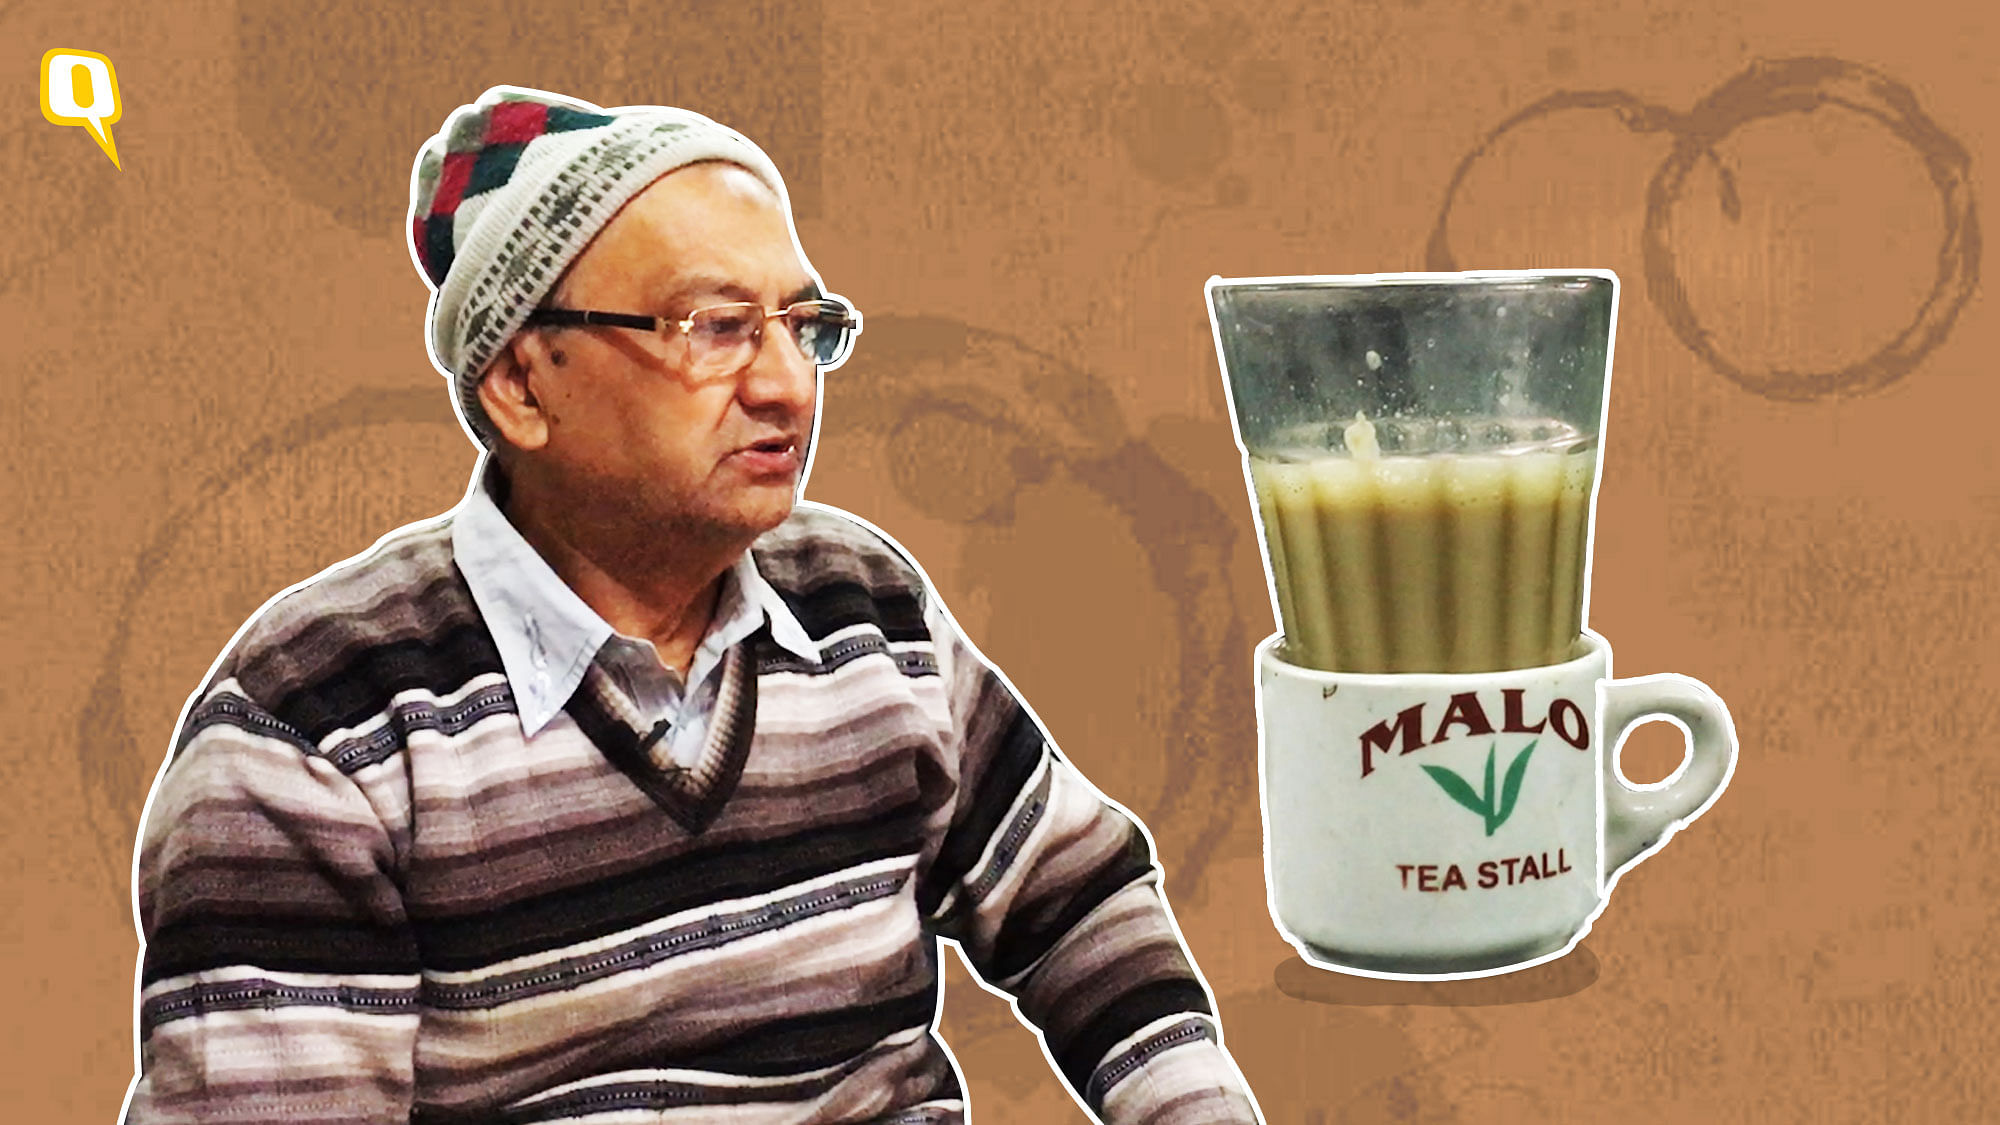 Malo Tea Stall is the oldest tea stall in Chitli Qabar which serves ‘Ek Bata Do’ <i>chai</i>.